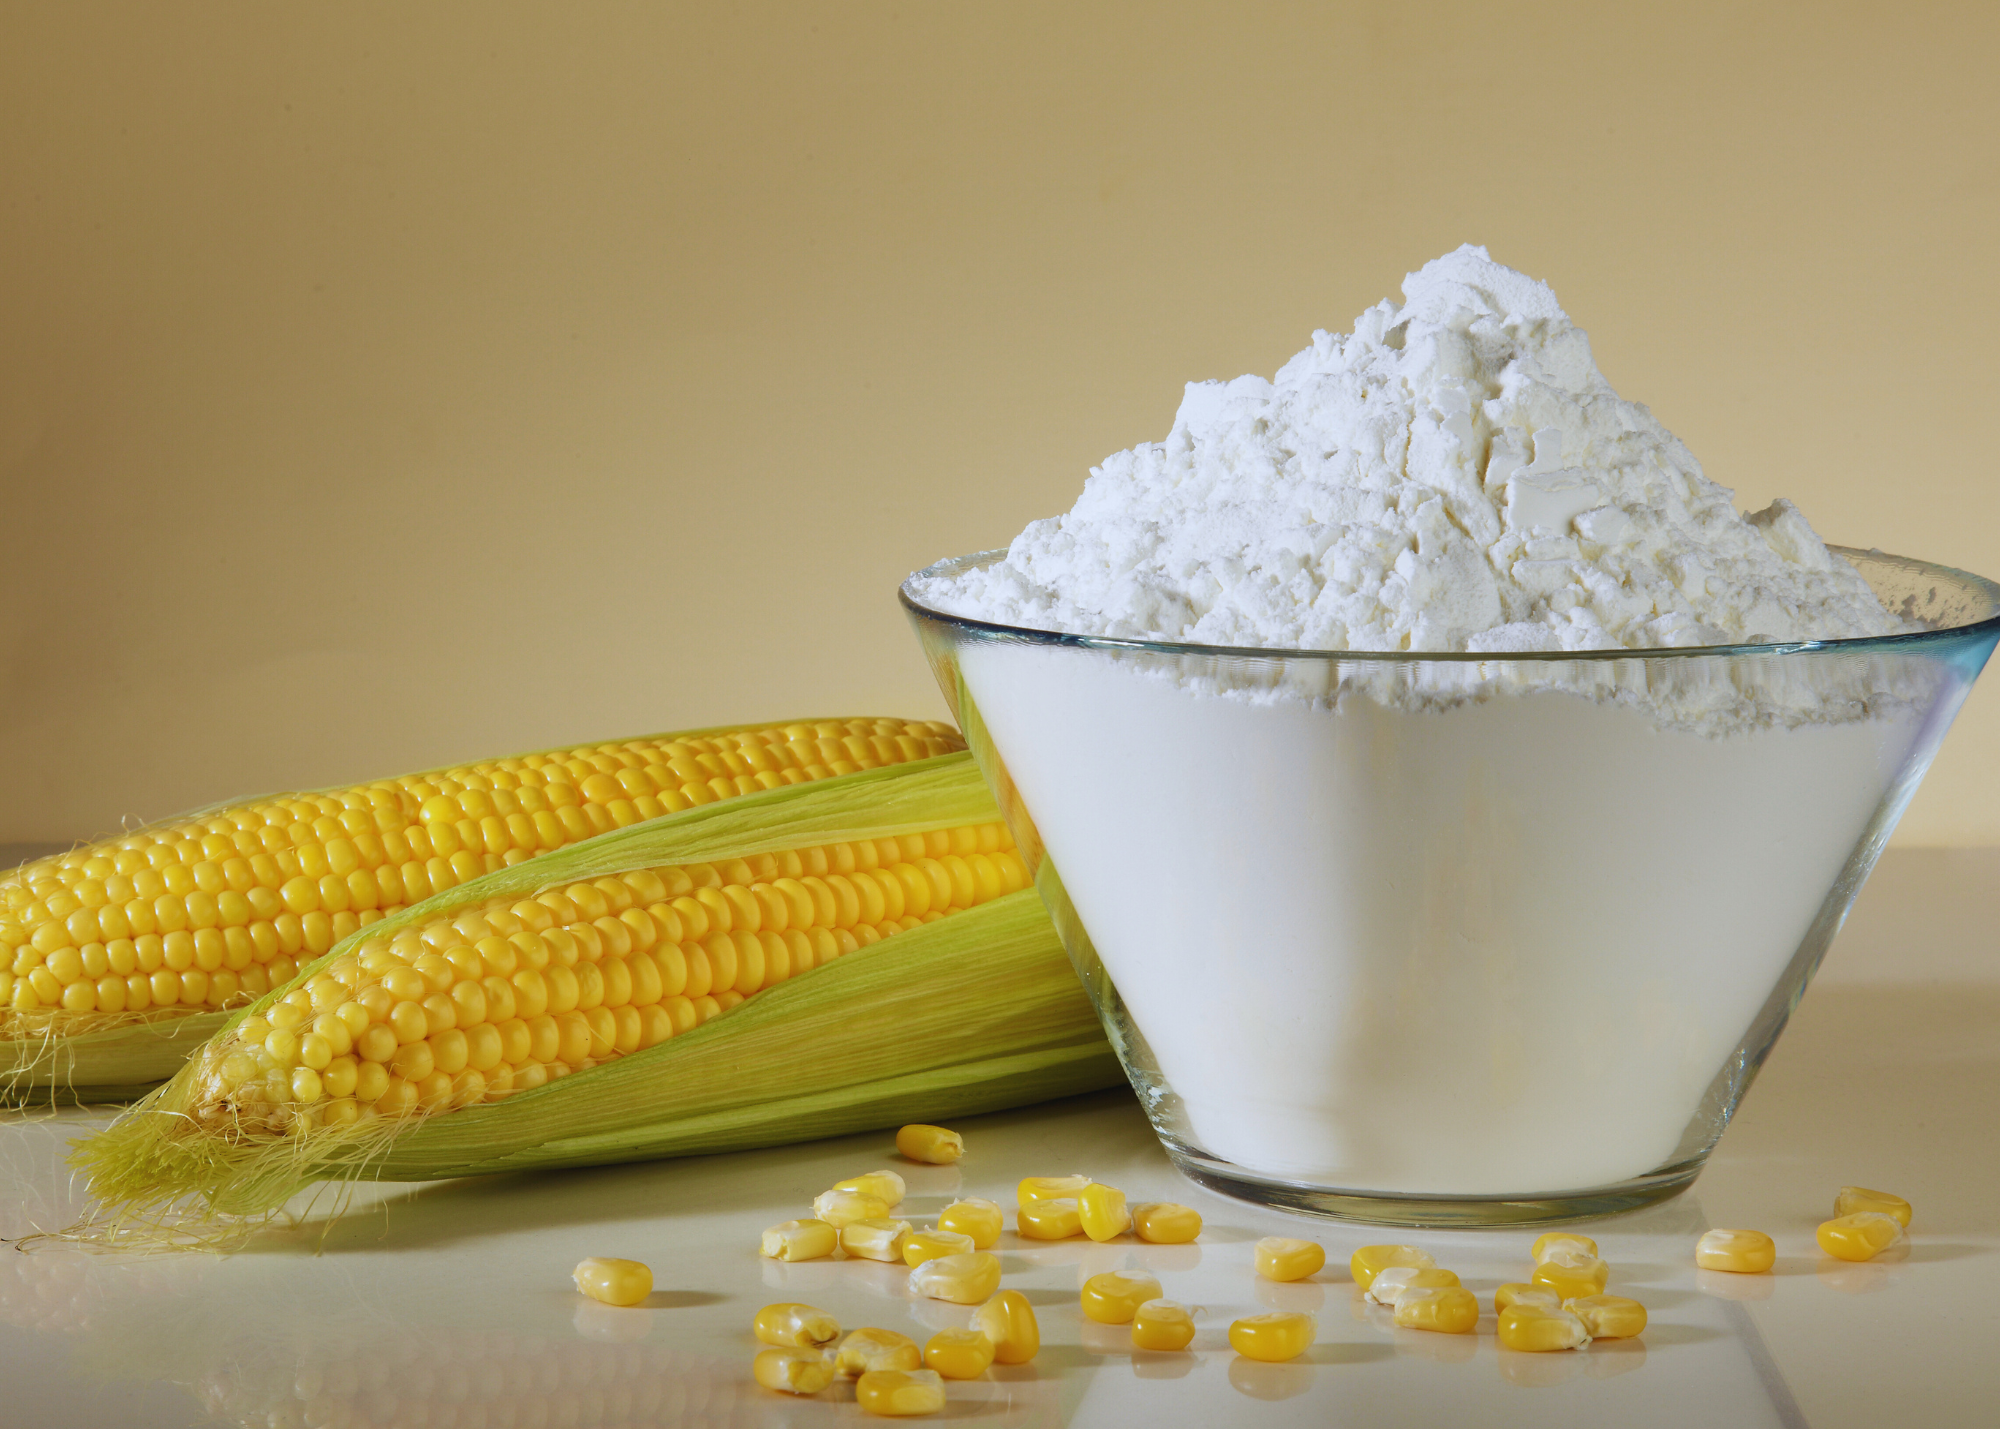 Modified corn starch